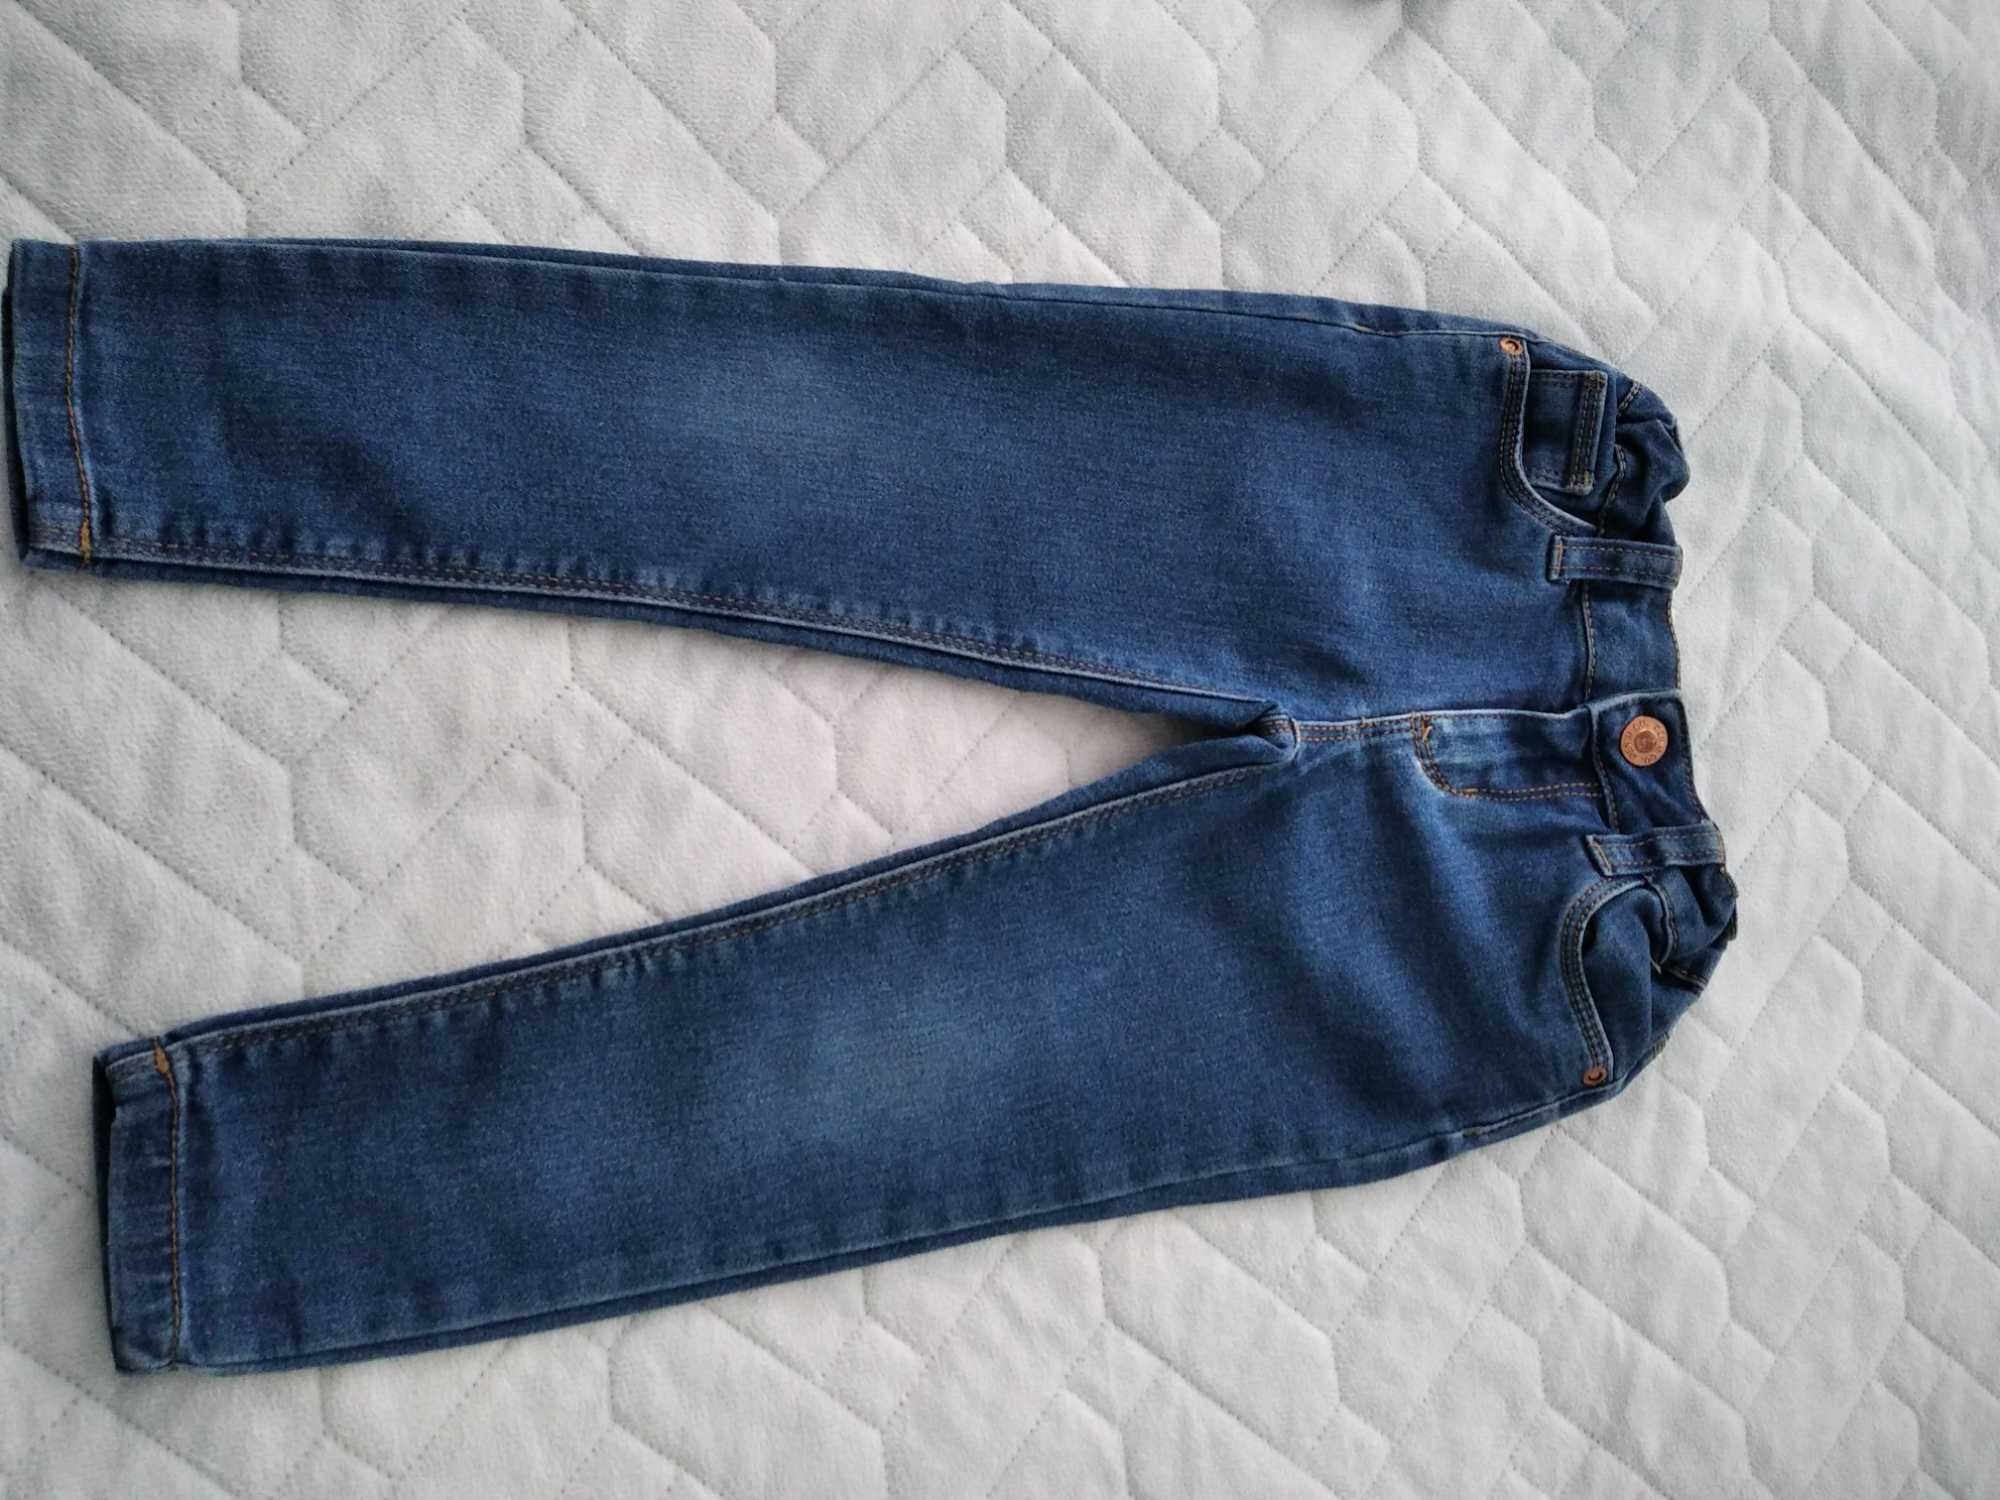 Spodnie jeansy, 98